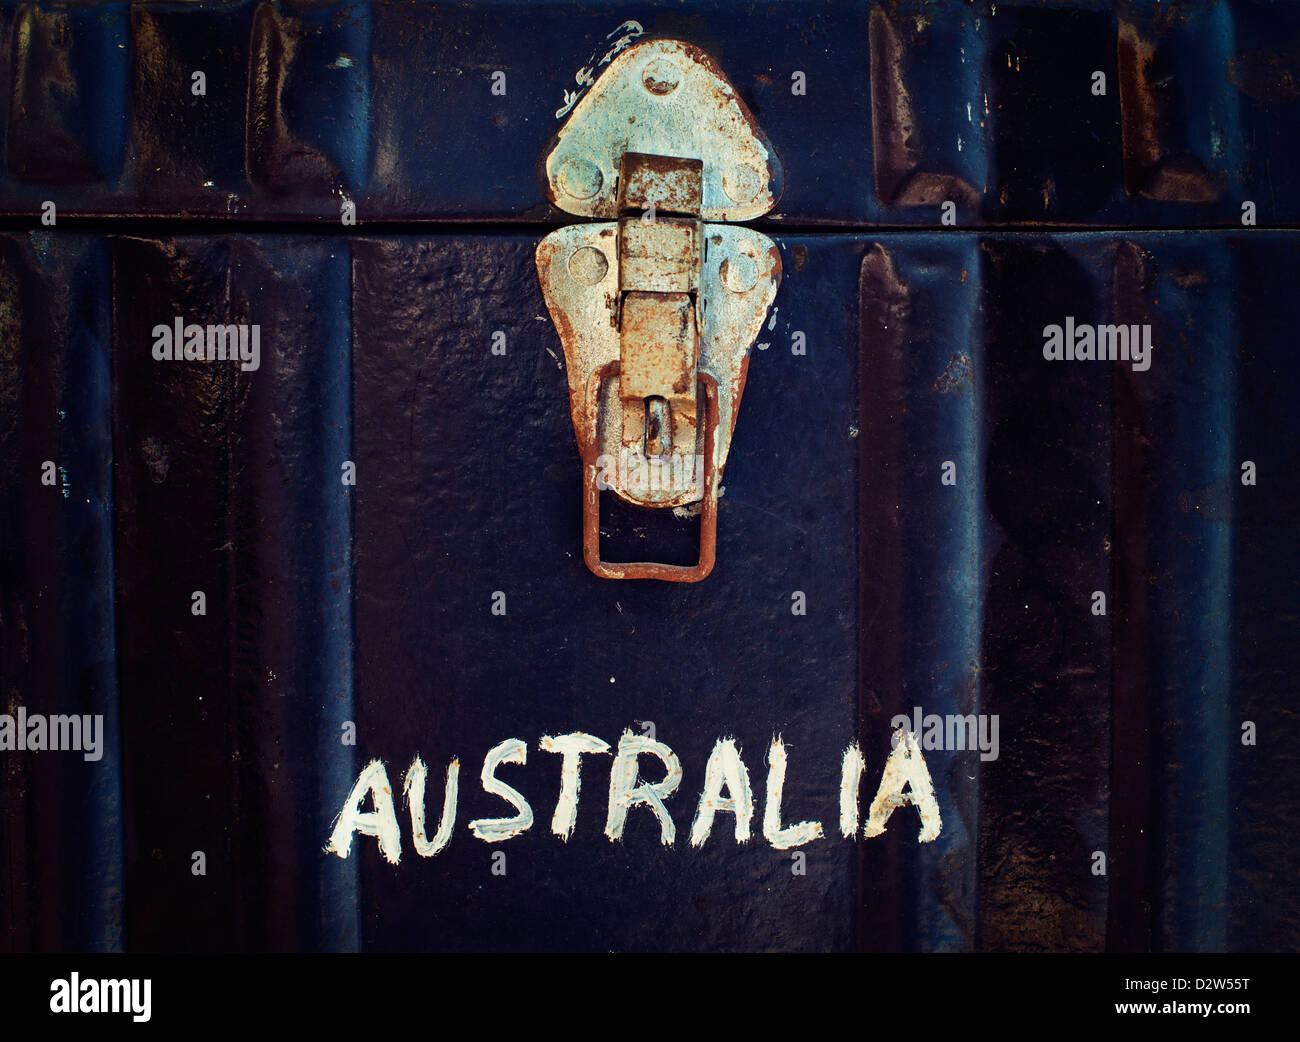 Metal voyageant avec l'Australie tronc peint sur l'extérieur Banque D'Images